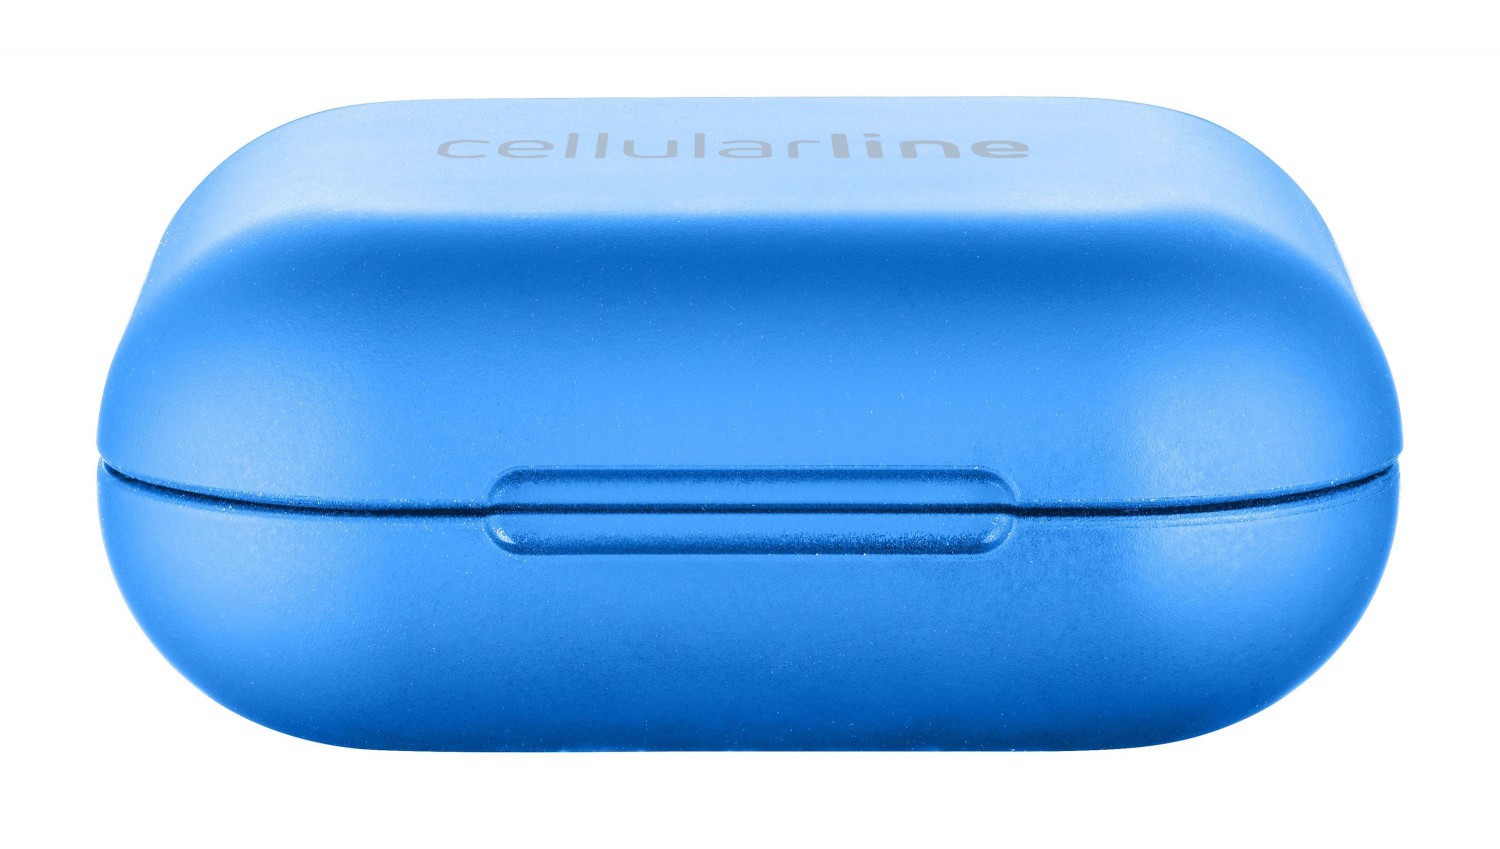 True wireless sluchátka Cellularline Java s dobíjecím pouzdrem, modrá